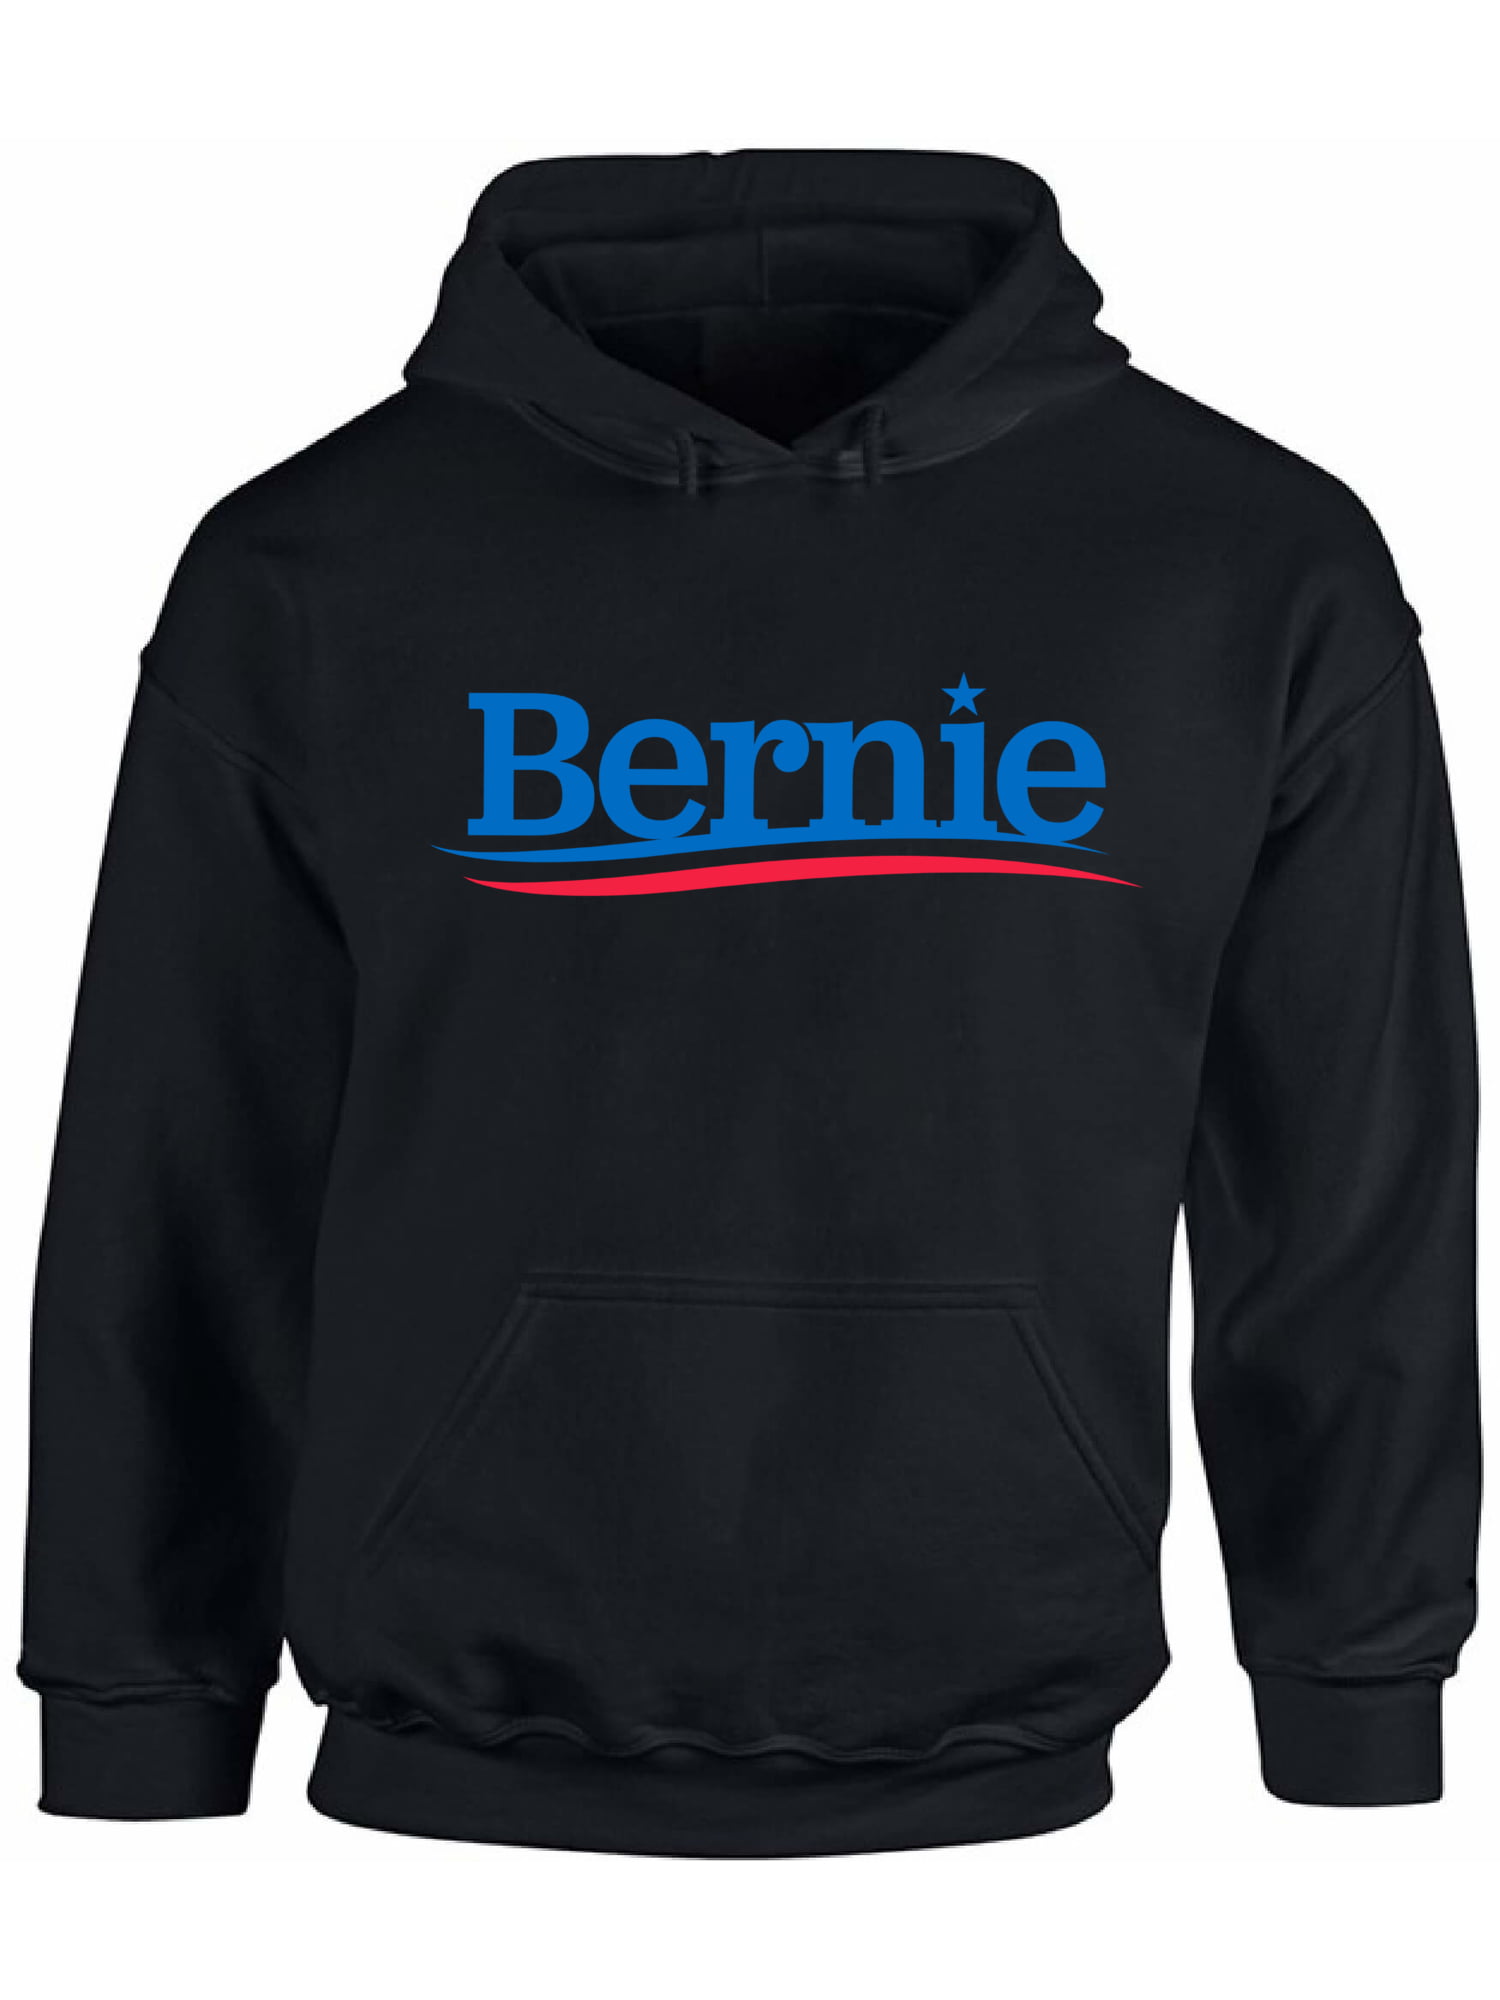 Bernie Sanders 2020 for President Vintage Colorful Toddler Hooded Sweatshirt